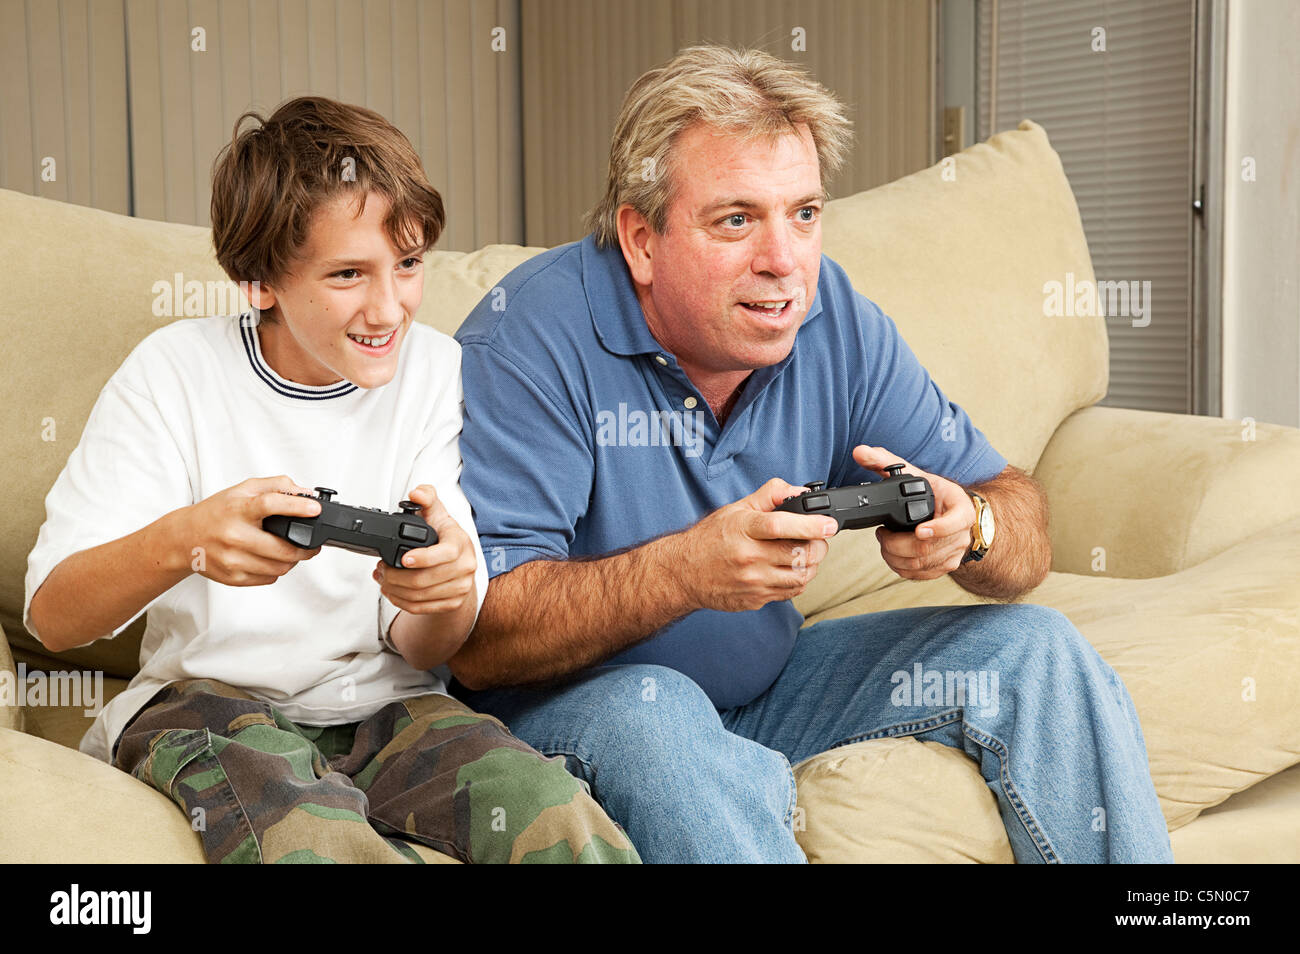 Friend father. Папа с сыном играют в компьютер. Папа и подросток игры фото. Мужчина сын игры. Сын играет в компьютерные игры.